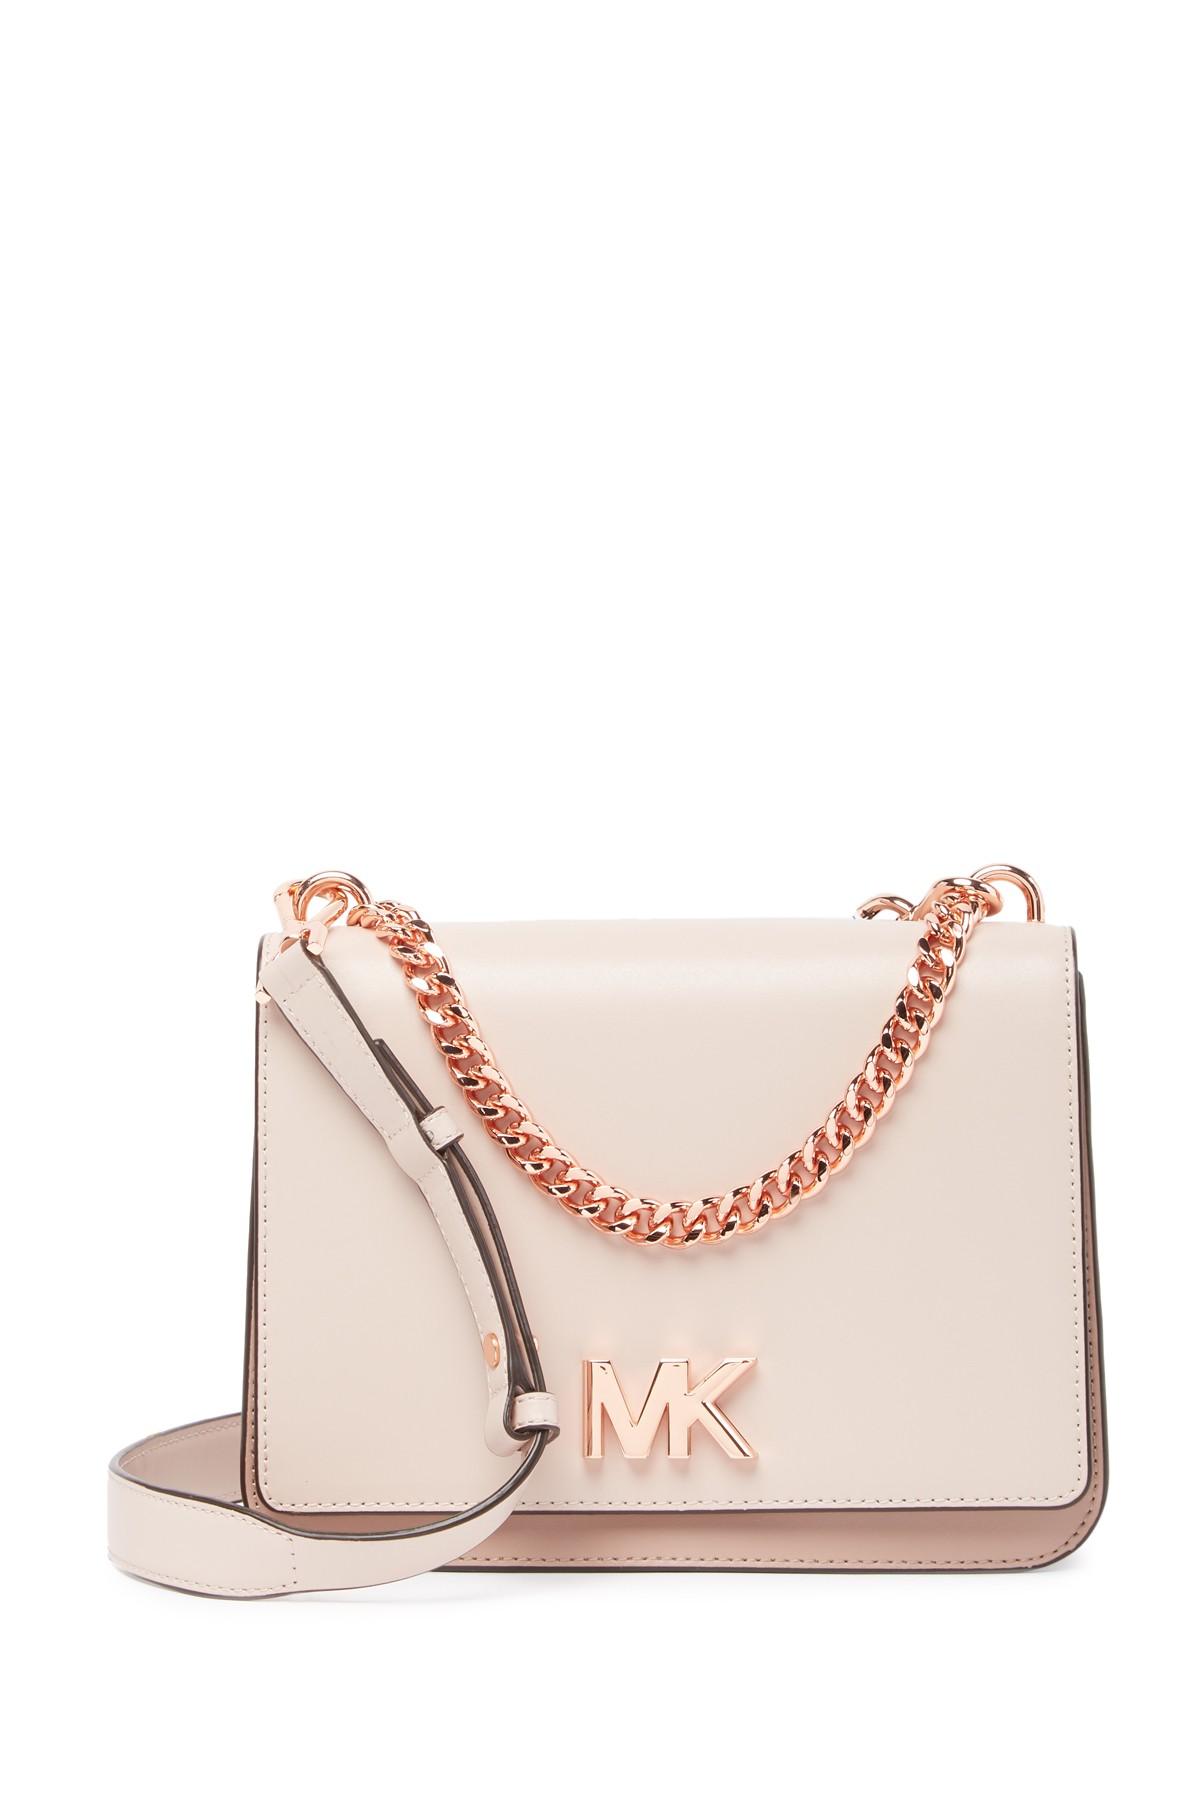 MICHAEL Michael Kors Mott Leather Shoulder Bag in Soft Pink (Pink) - Lyst